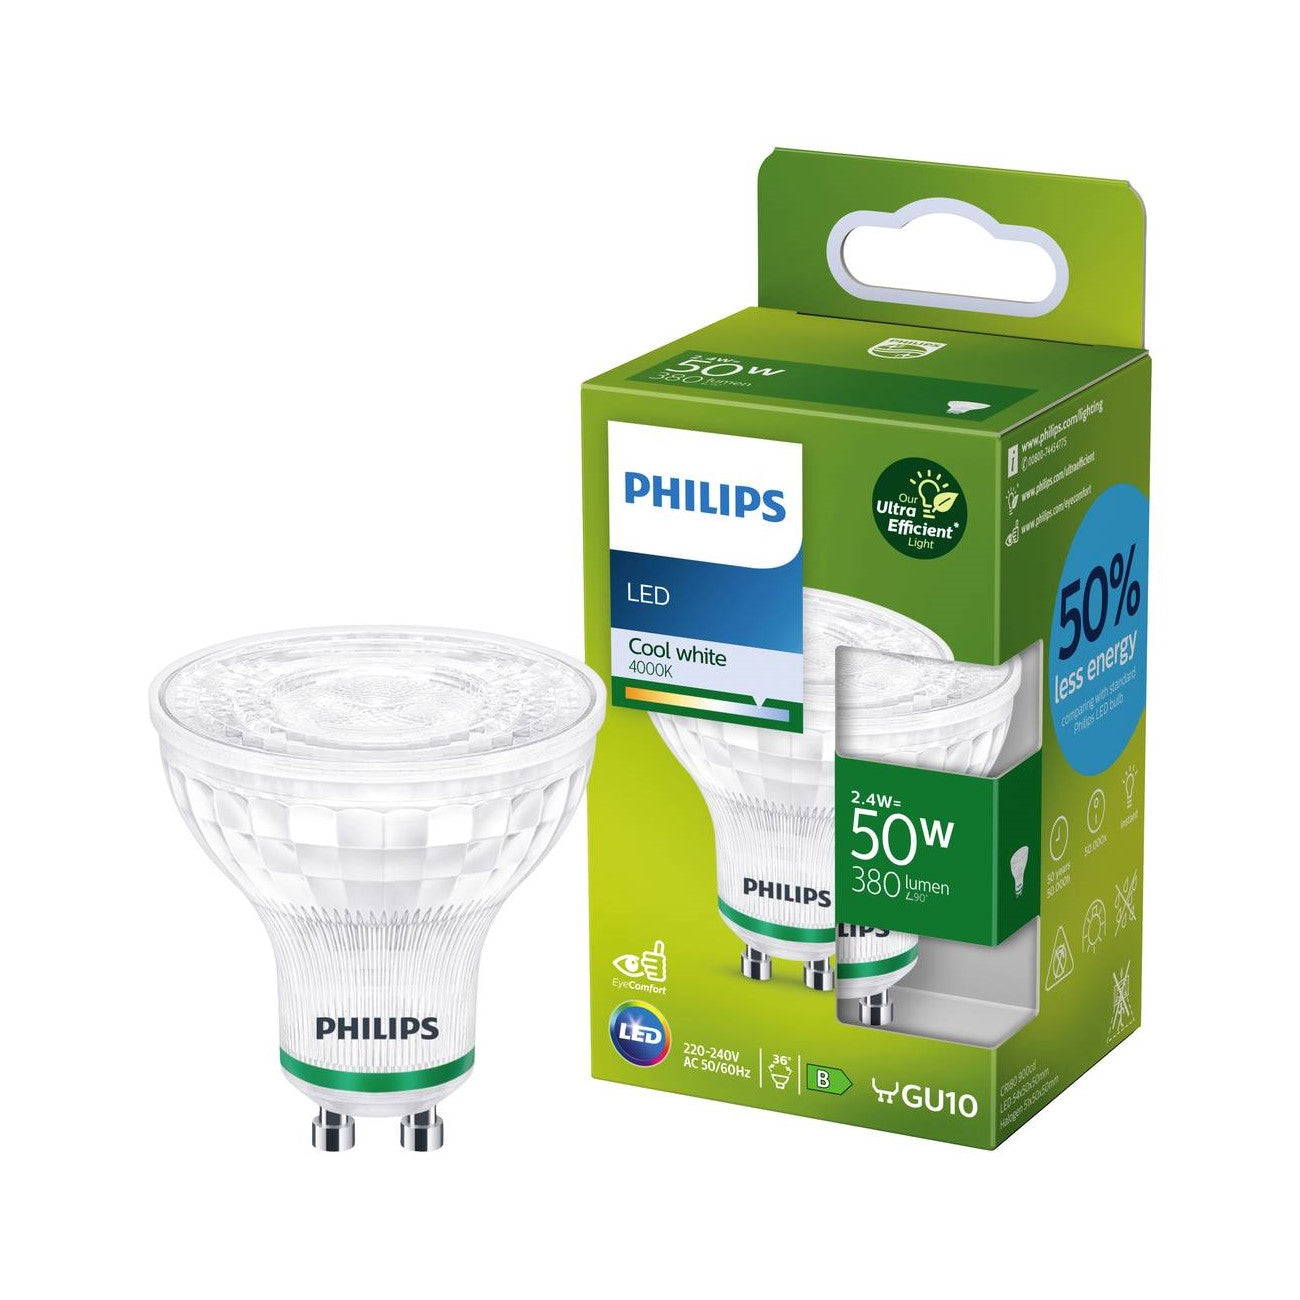 Philips LED GU10 2,4W = 50W Reflektor 380lm ULTRA EFFIZIENT 36° Neutralweiß 4000K